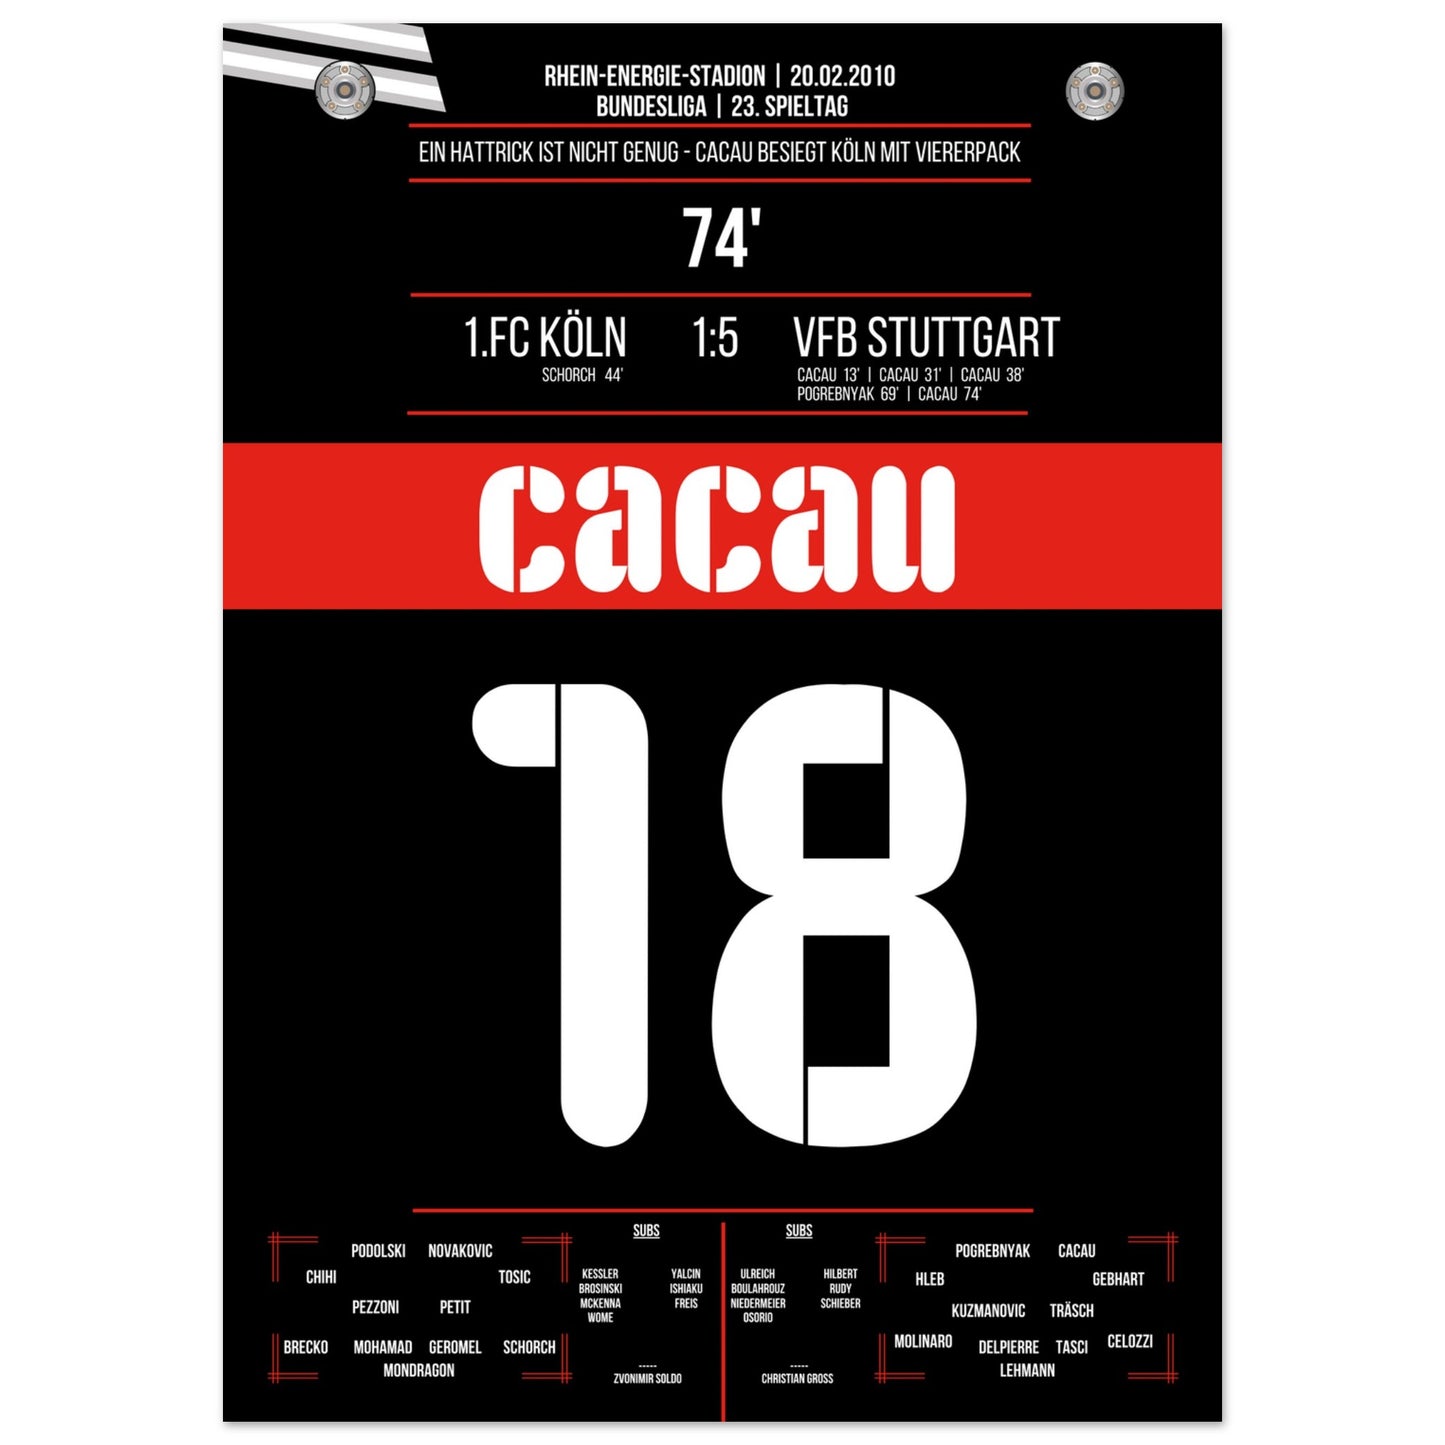 Cacau's Viererpack beim Auswärtsspiel in Köln 2010 50x70-cm-20x28-Ohne-Rahmen